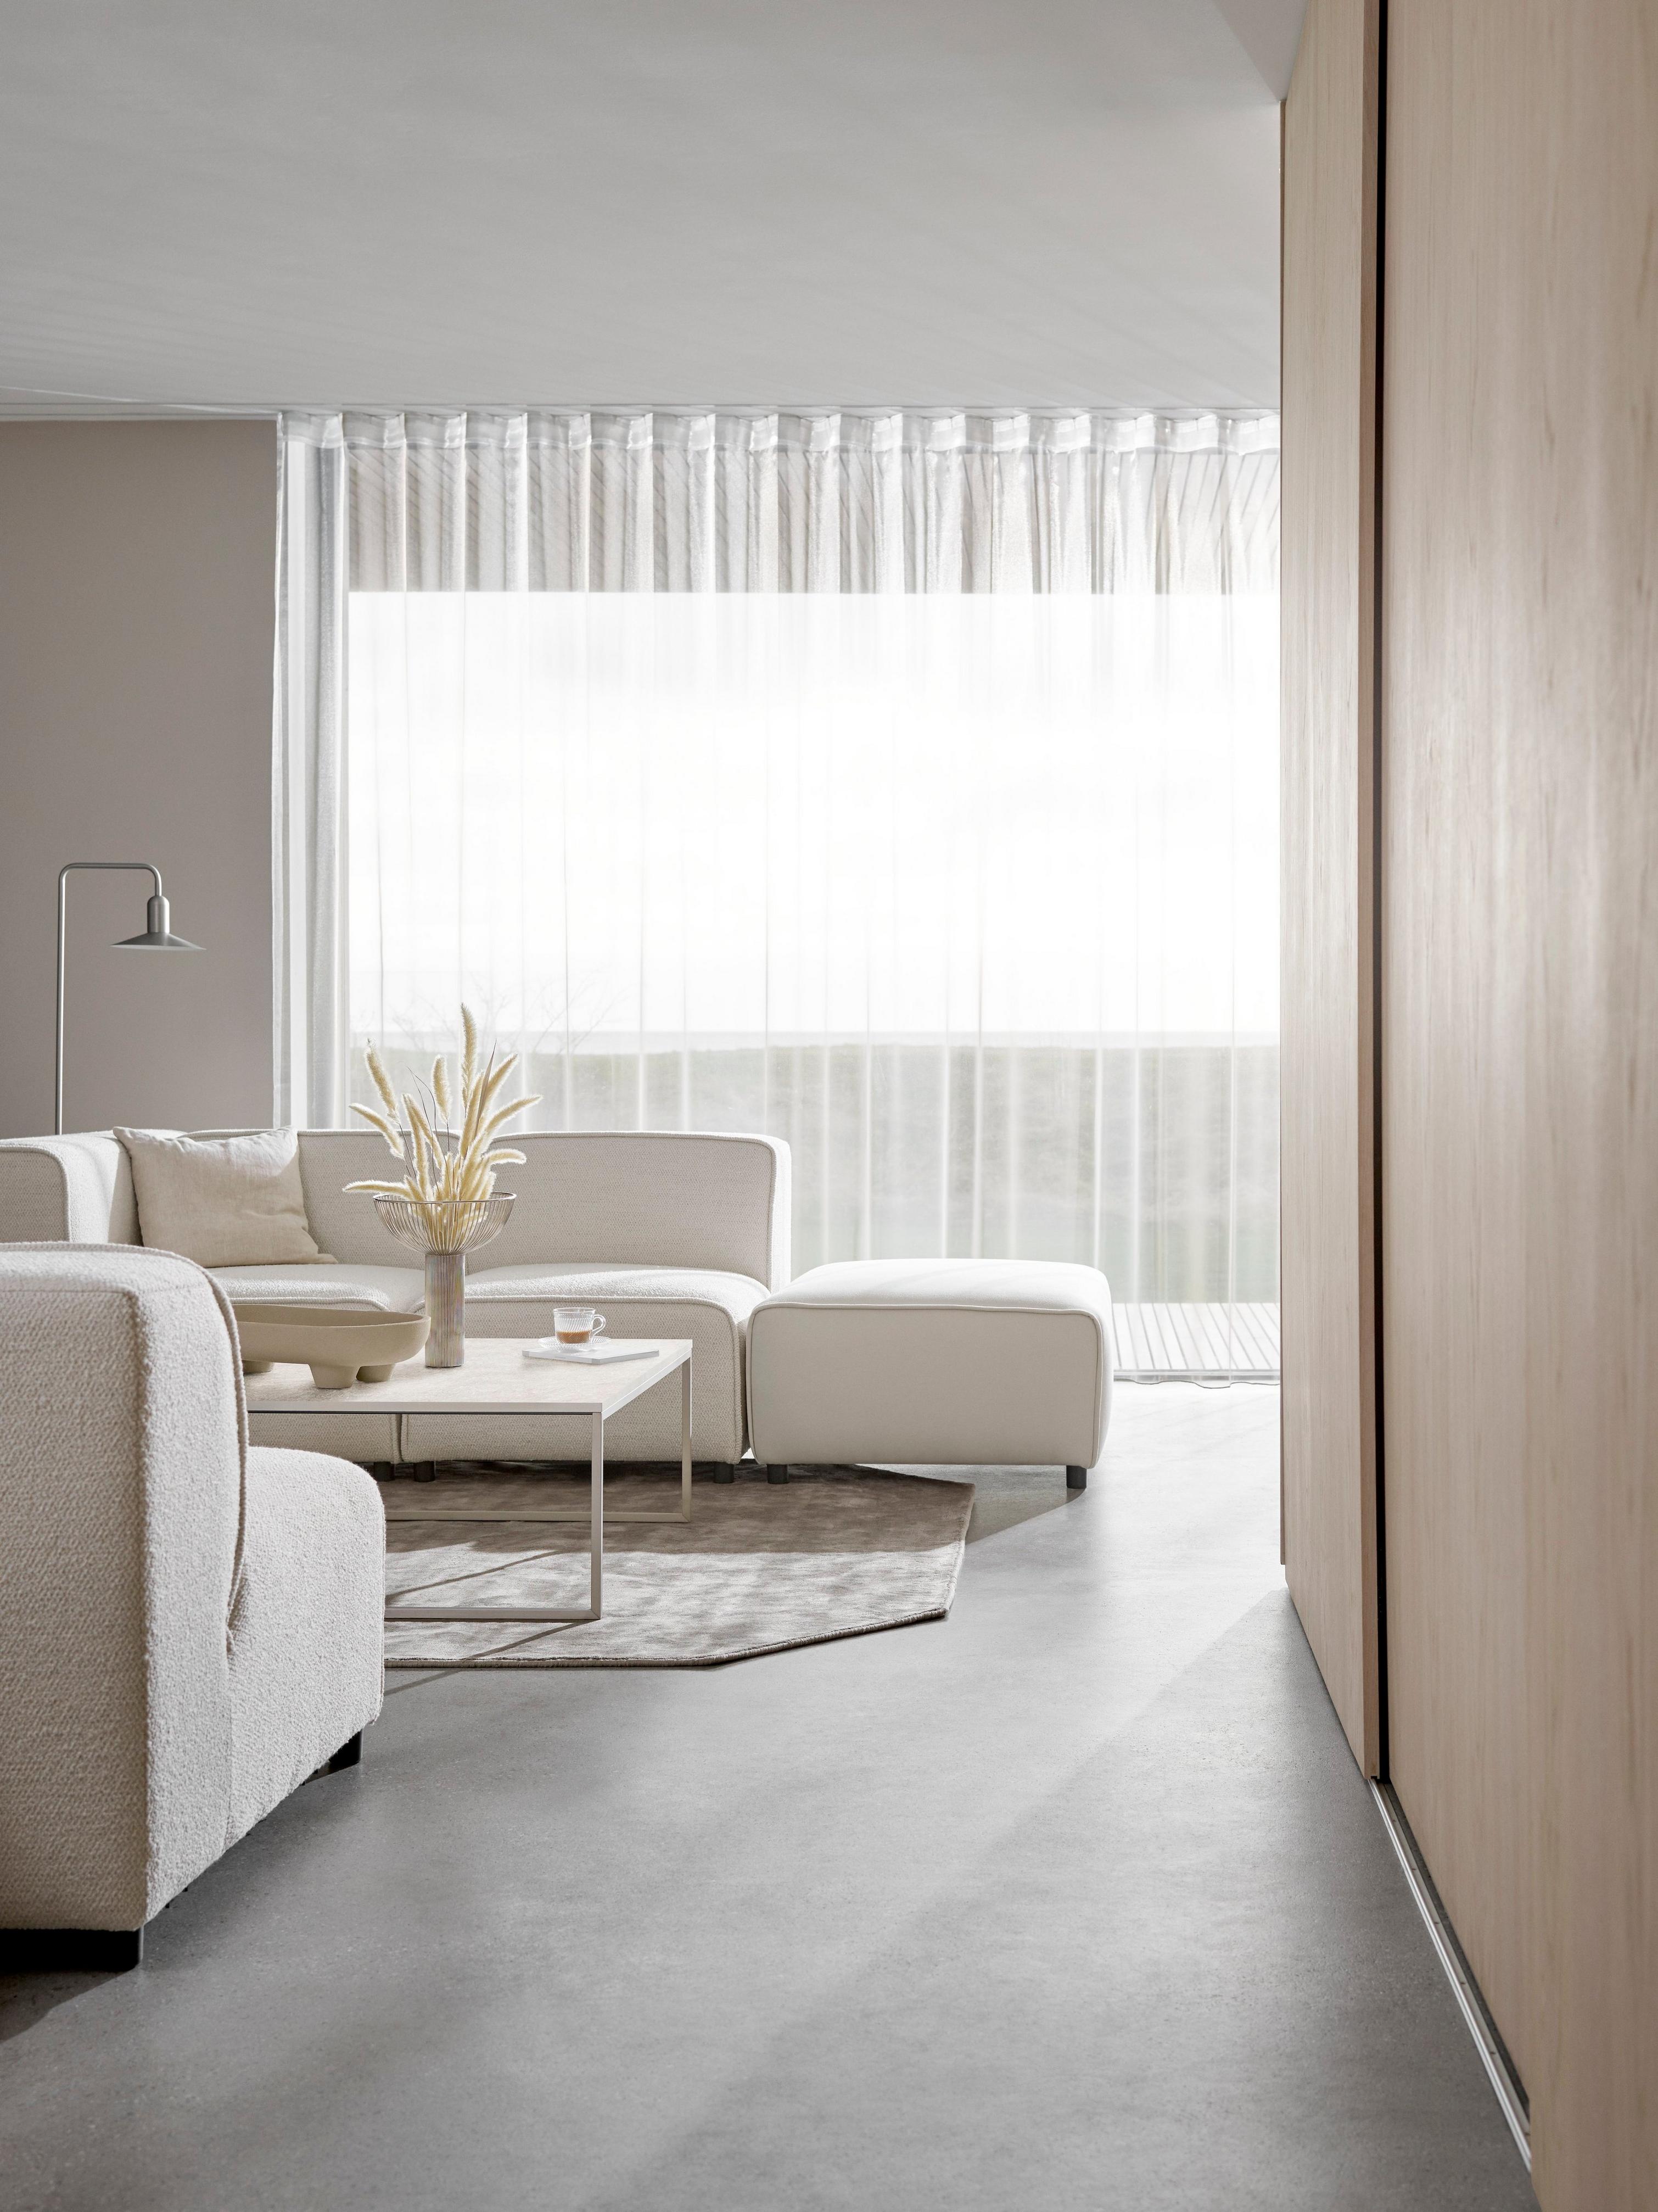 Cremefarvet Carmo sofa i minimalistisk stue og transparente gardiner, der spreder lyset.